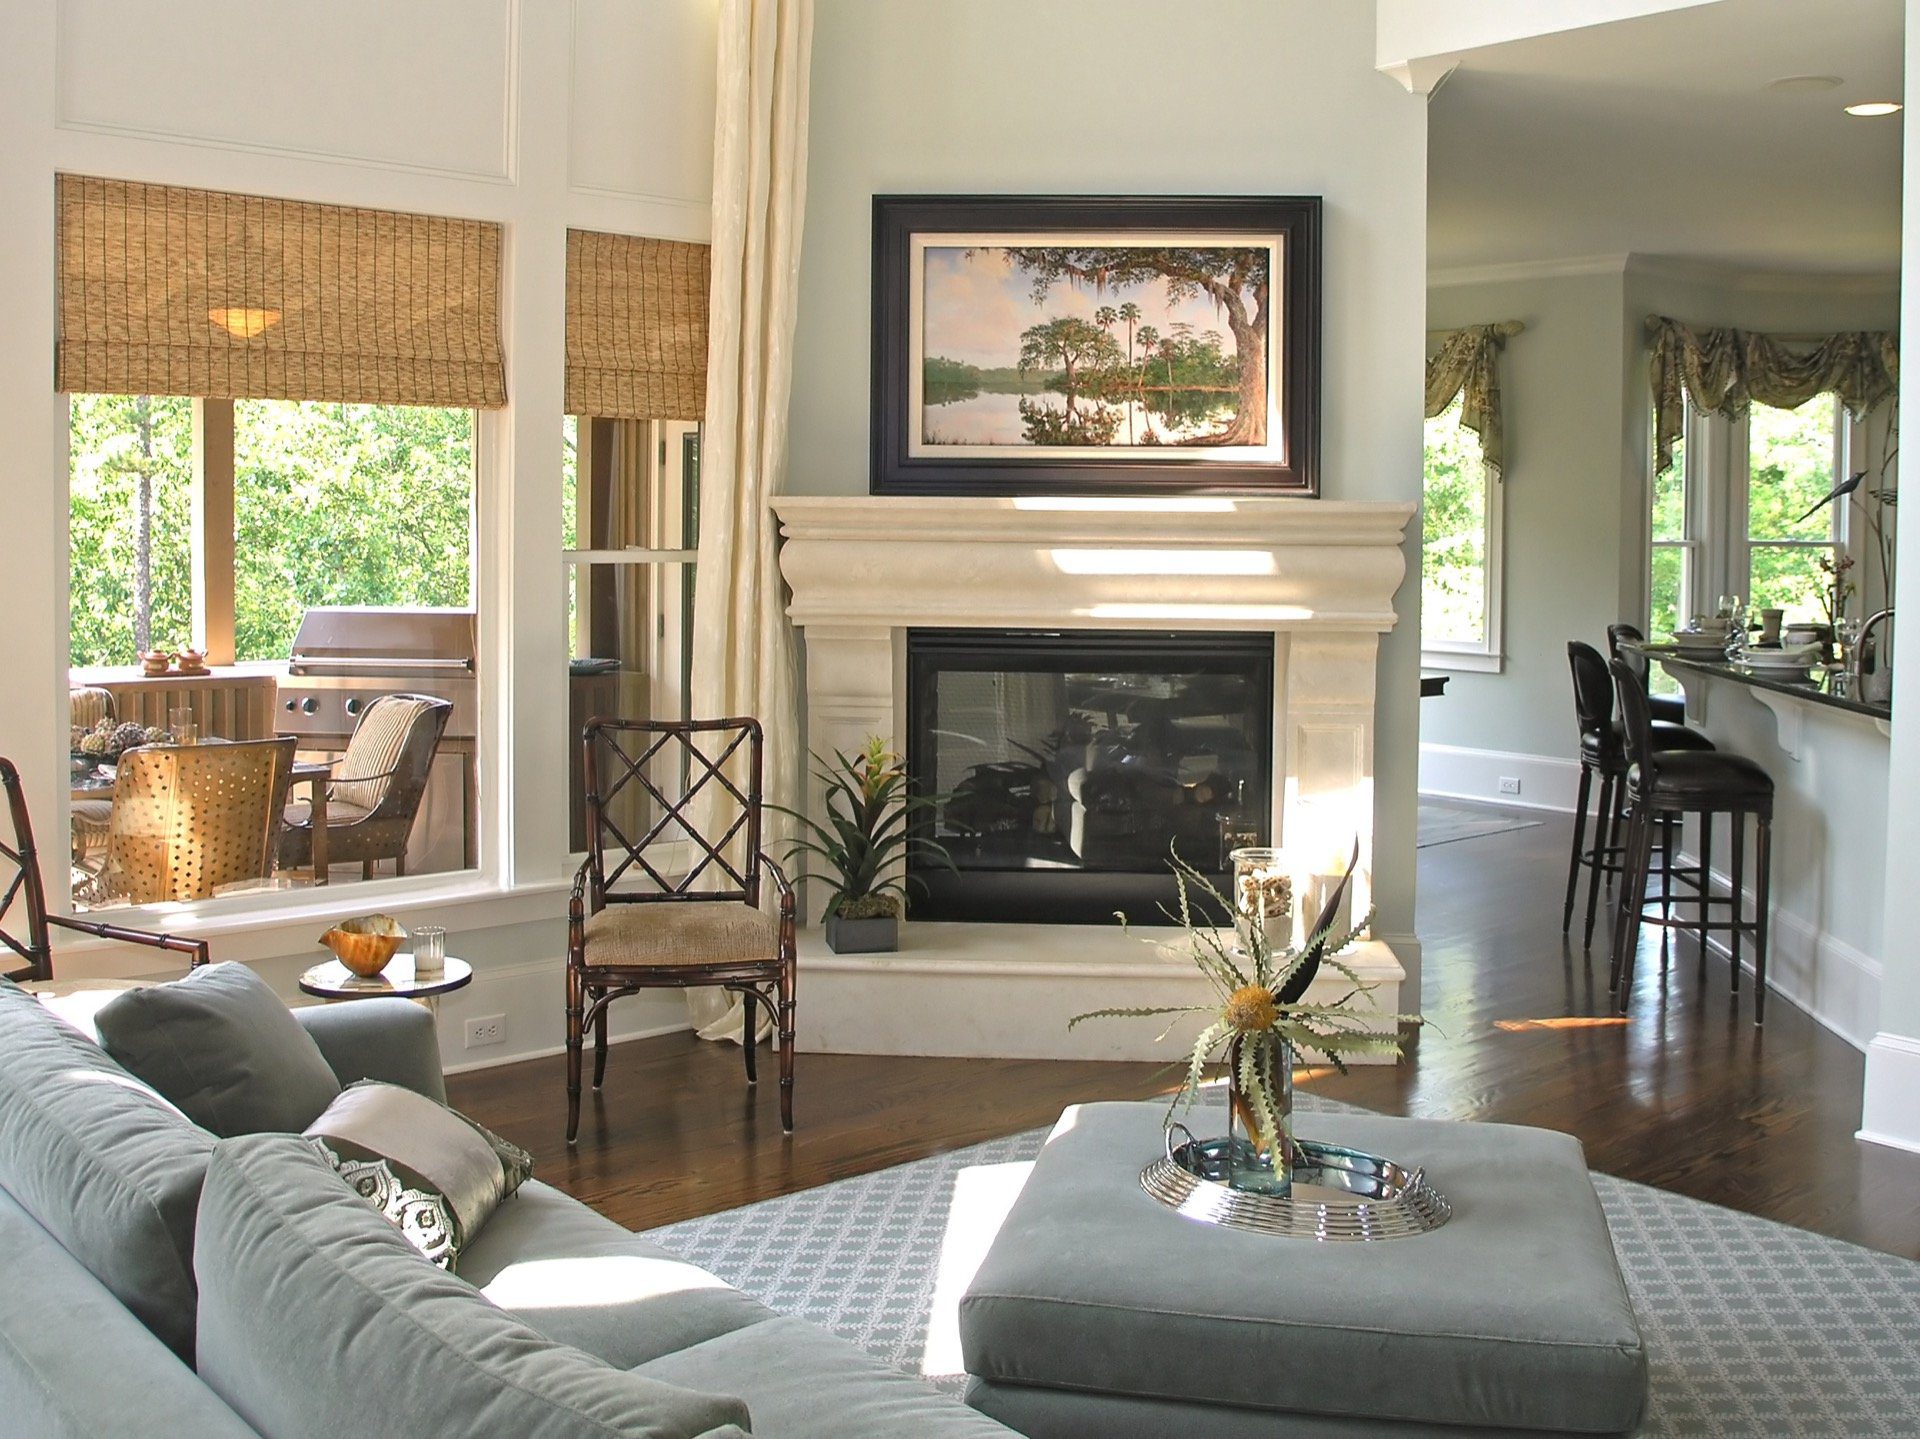 Modern, custom-designed living room